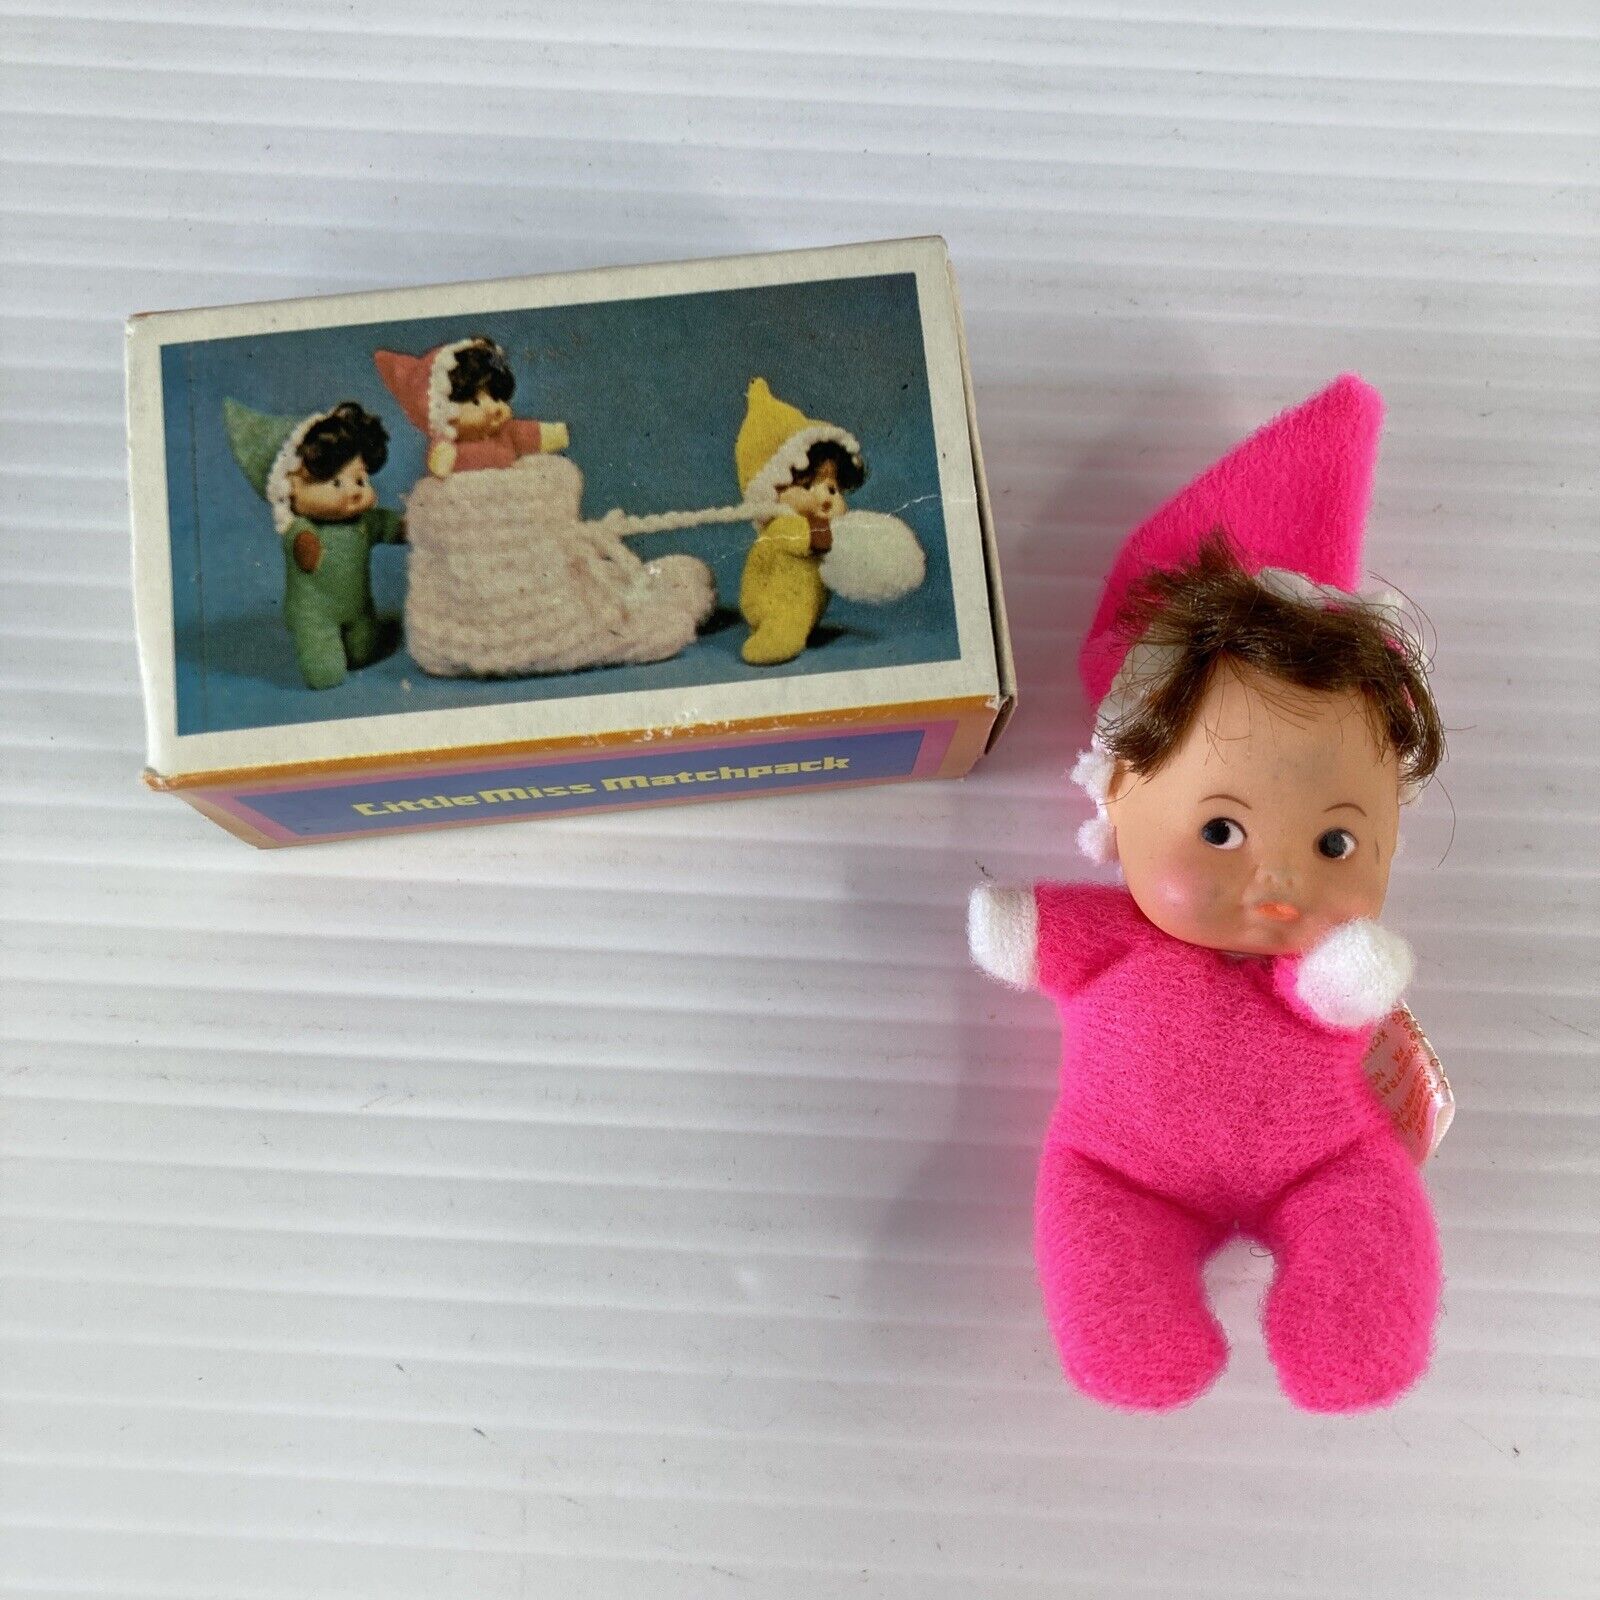 Vintage Little Miss Matchpack Doll - Pink Original Matchbox  Hong Kong Fun World Fun World